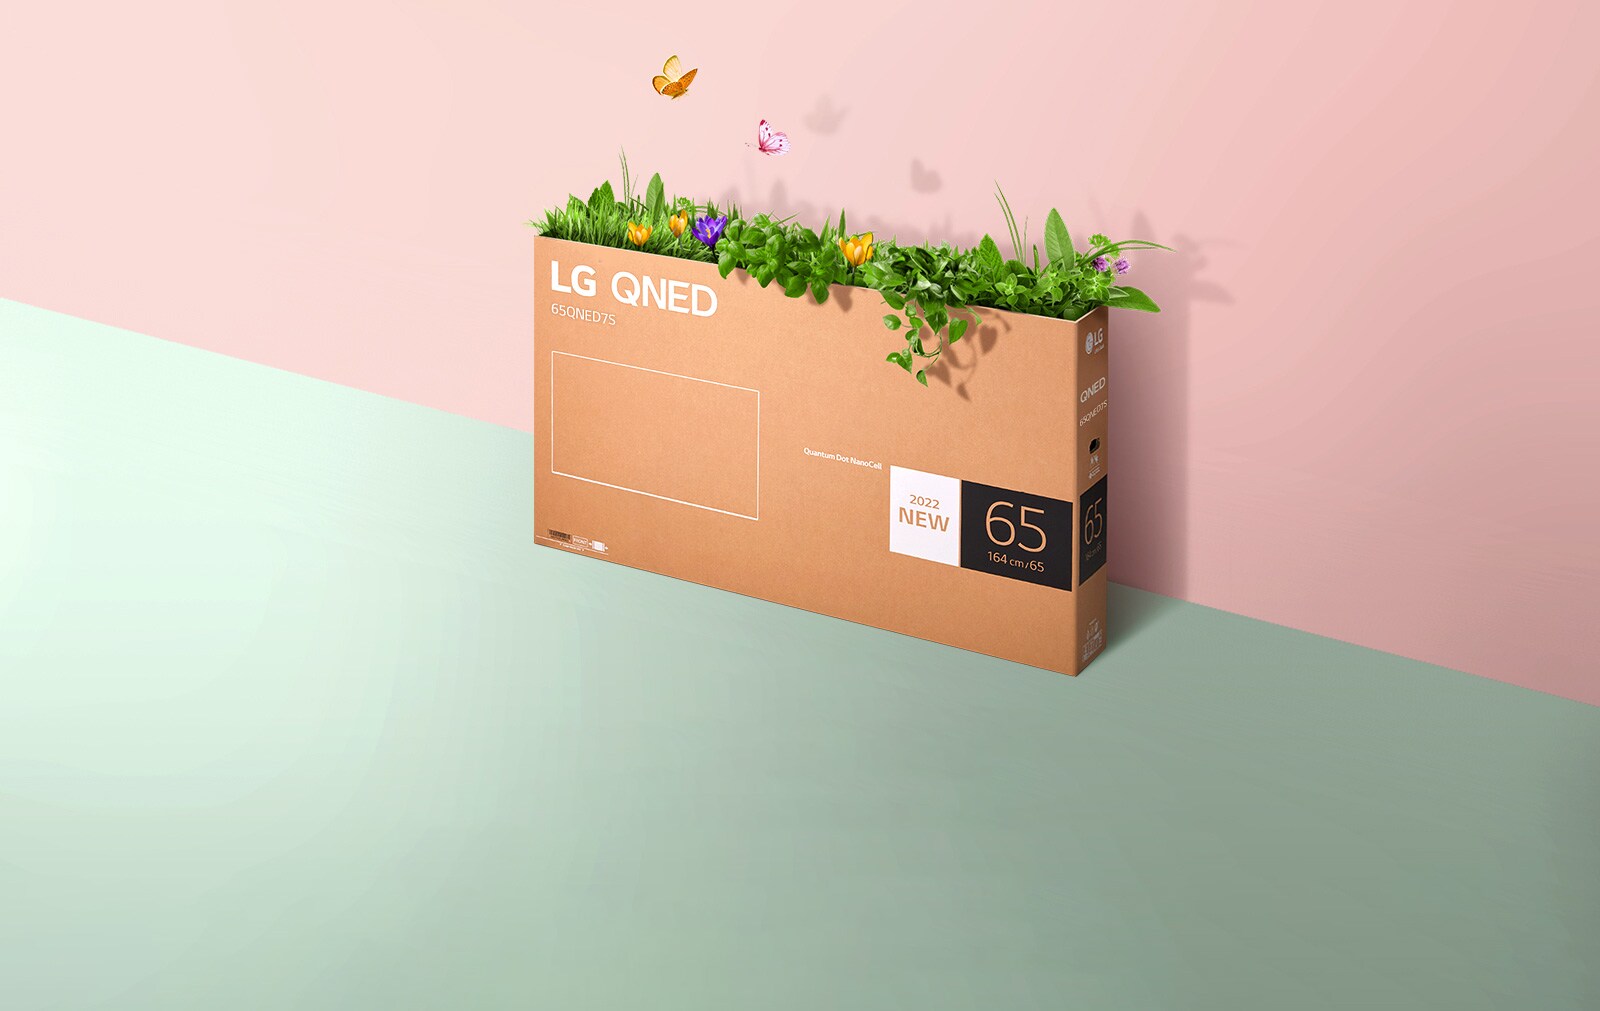 QNED iepakojuma kaste ir novietota uz rozā, zaļa fona, un no tās uz āru aug zāle un lido ārā tauriņi.